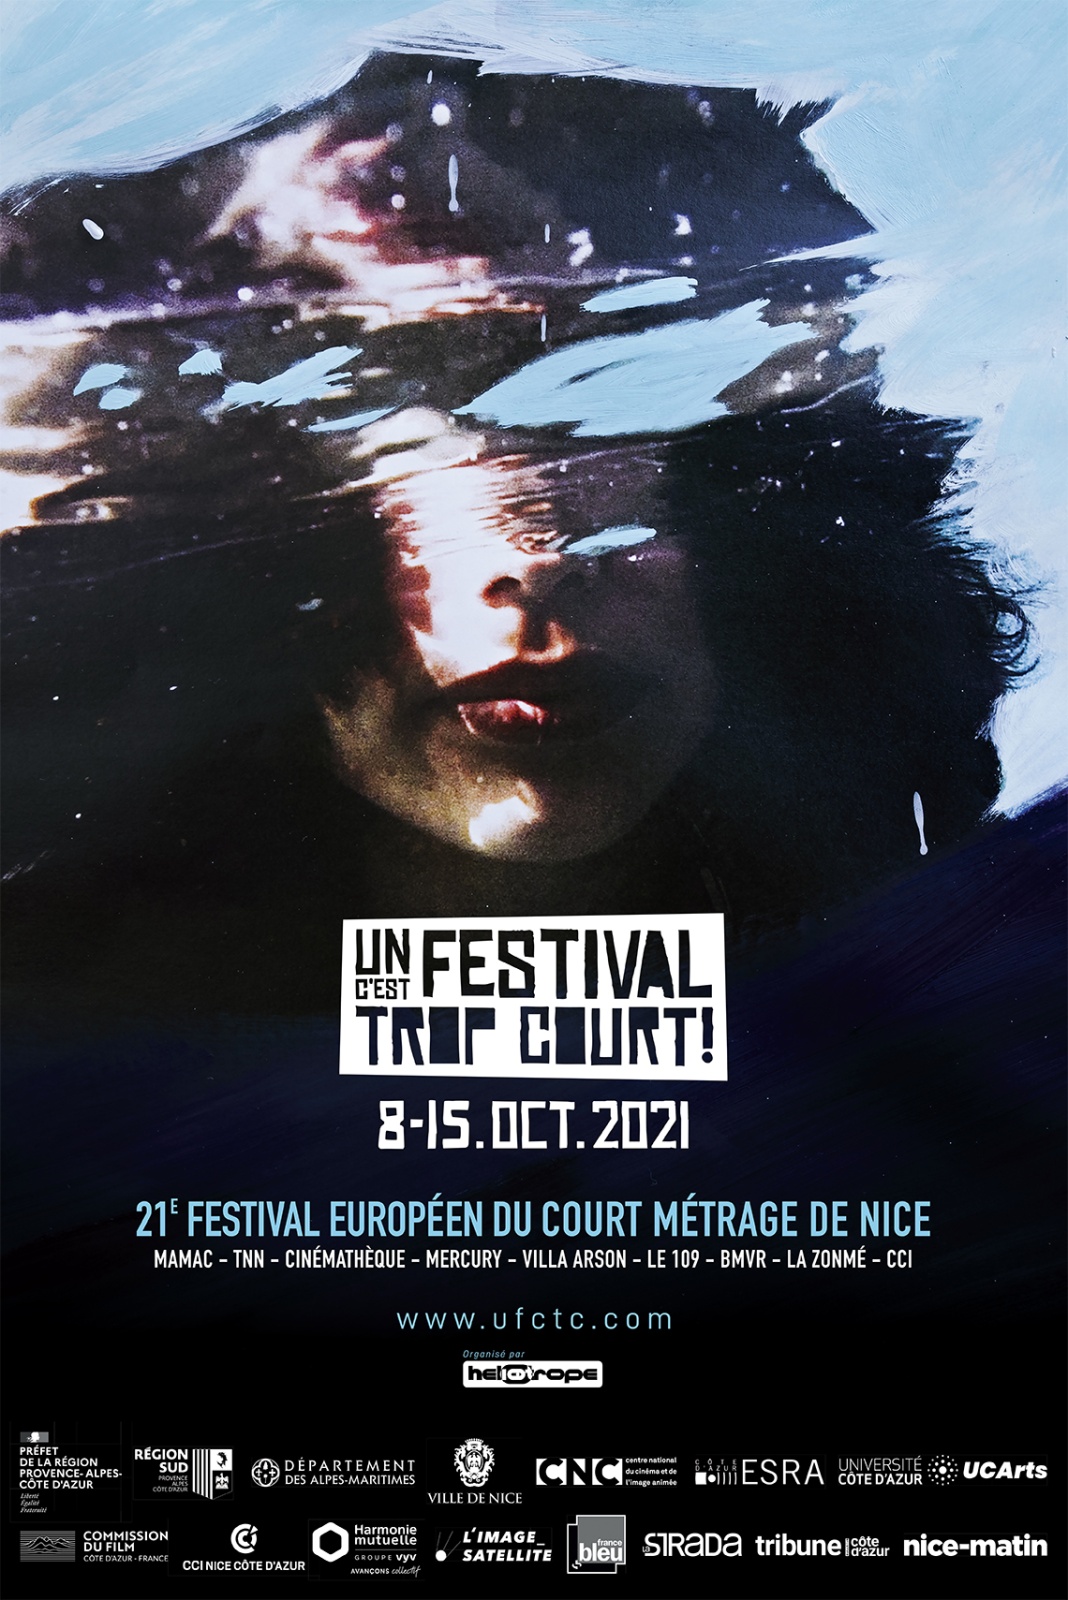 Un festival c'est trop court. Nice Film Festival, 2021

https://ufctc.com/en/visual-ufctc-2021/

Open link